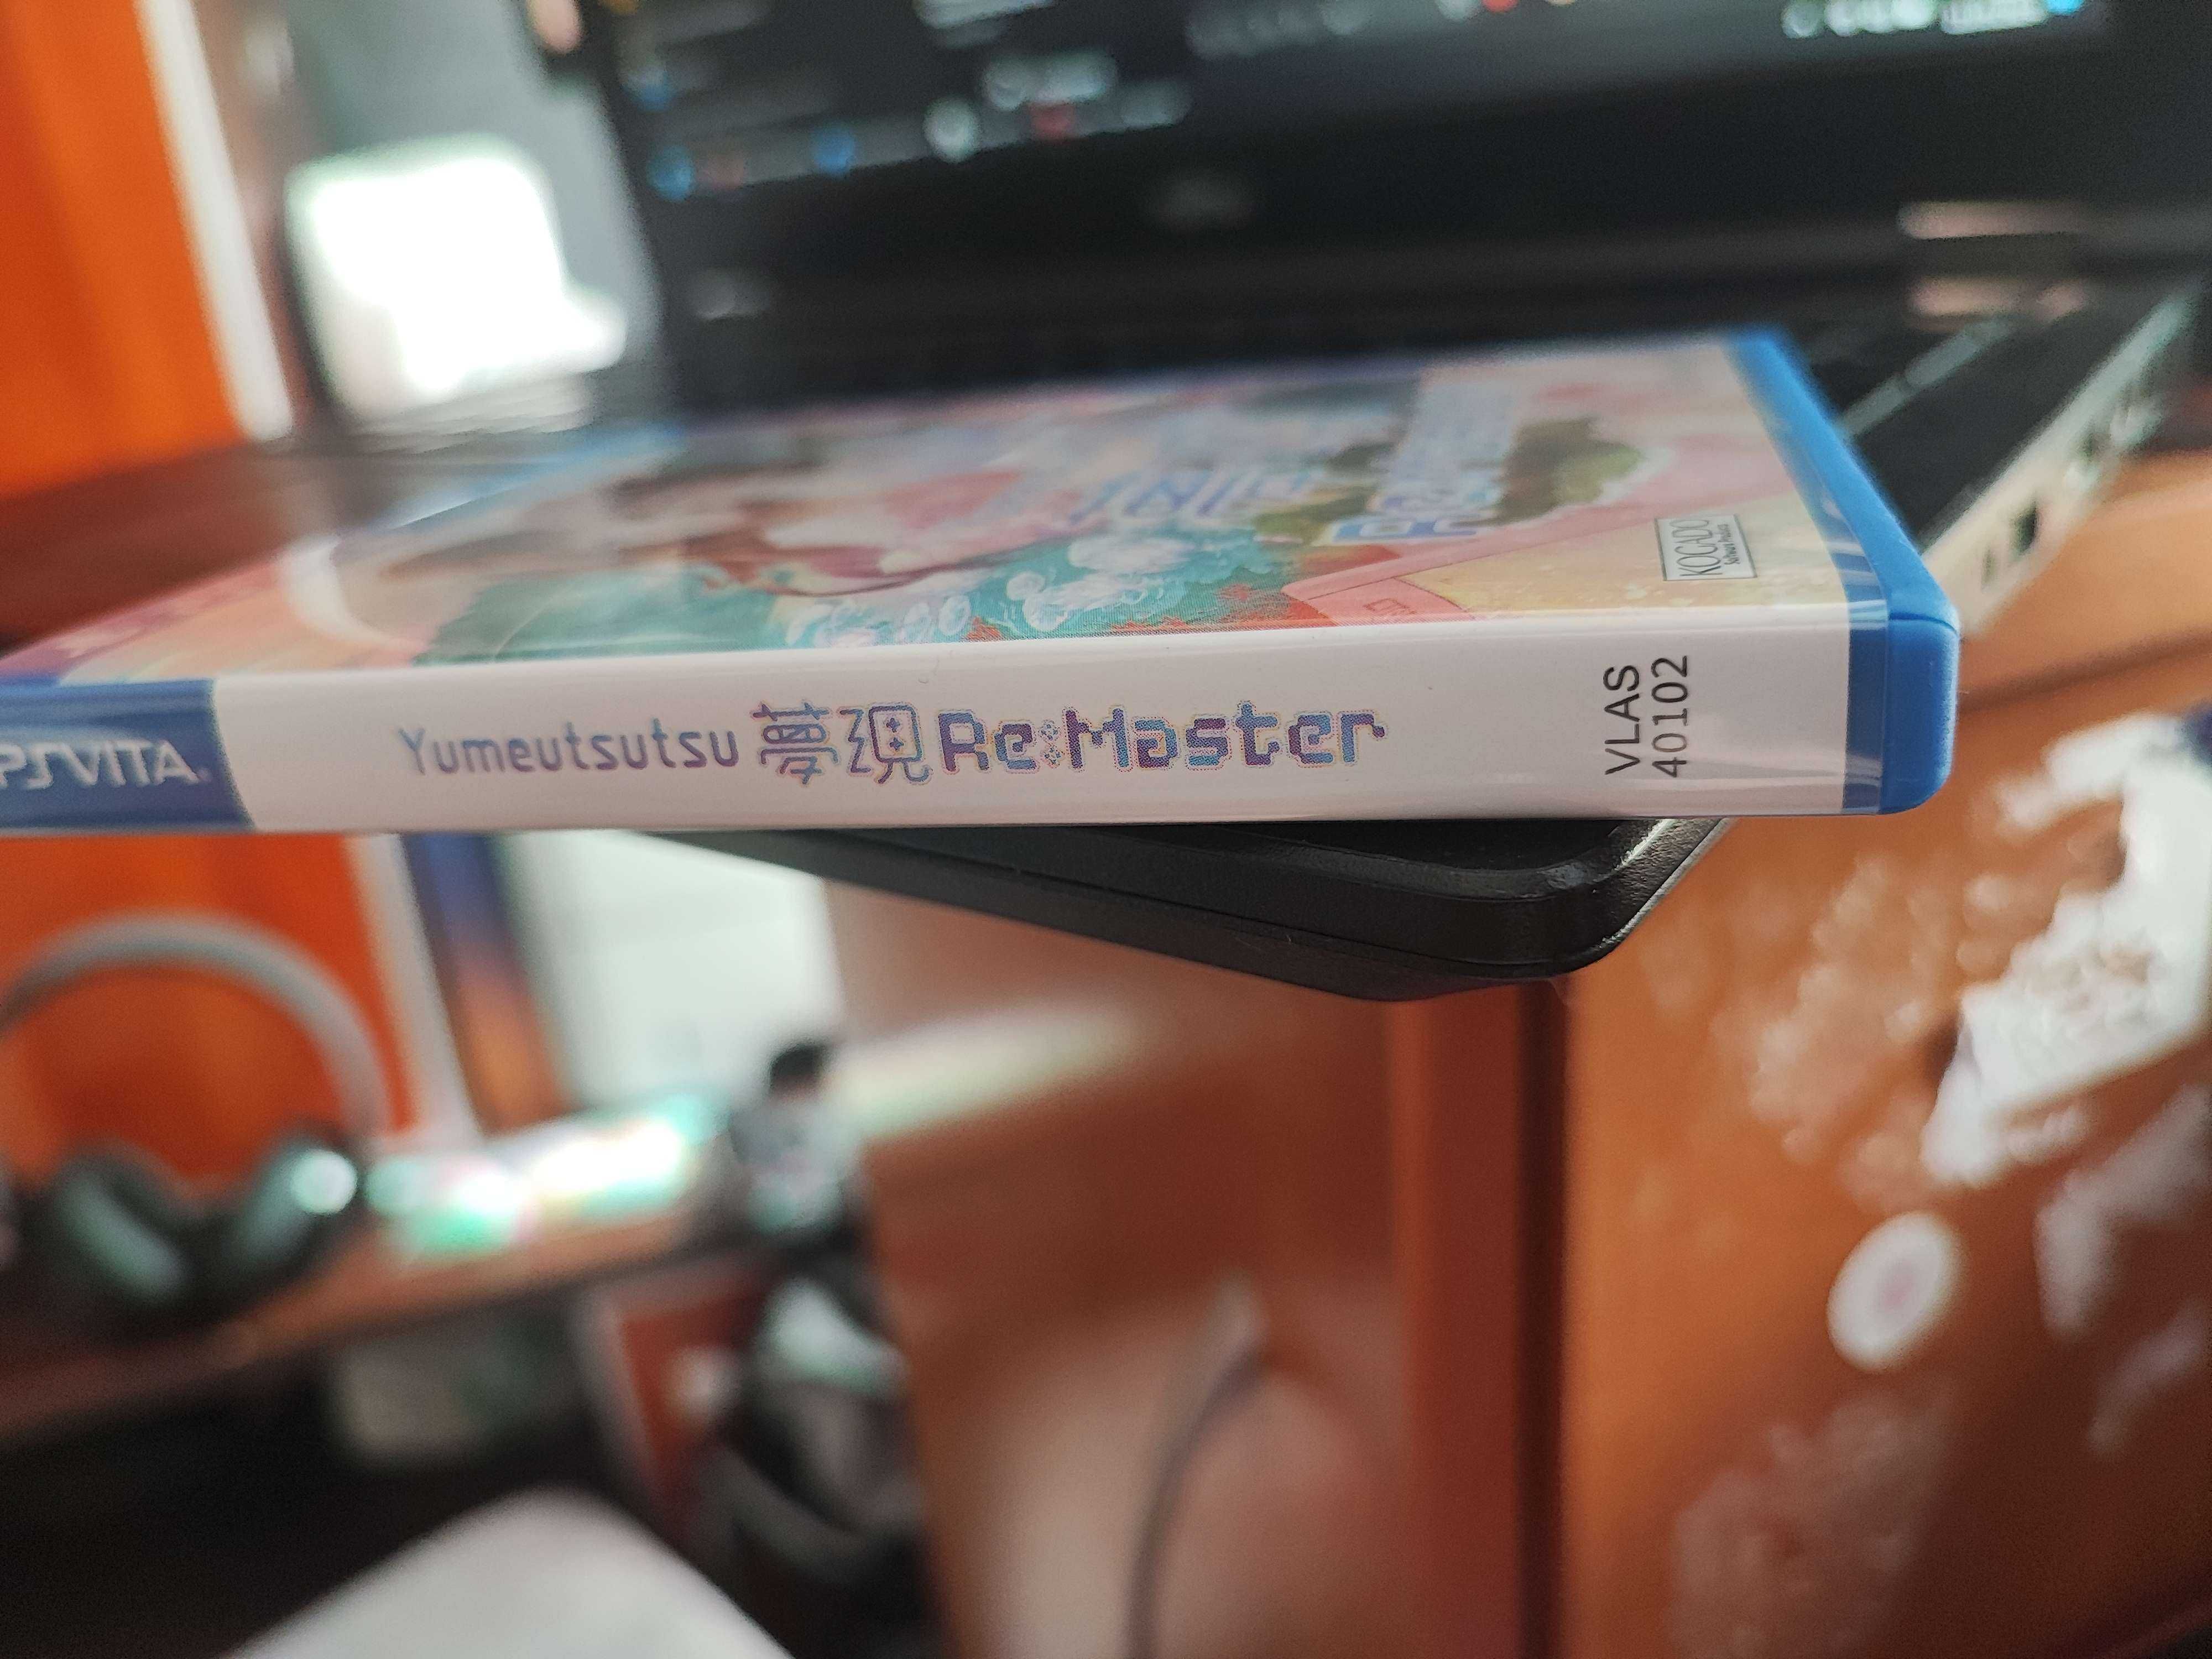 Yumeutsutsu Re:Master Playstation PS Vita Limited Edition Unikat